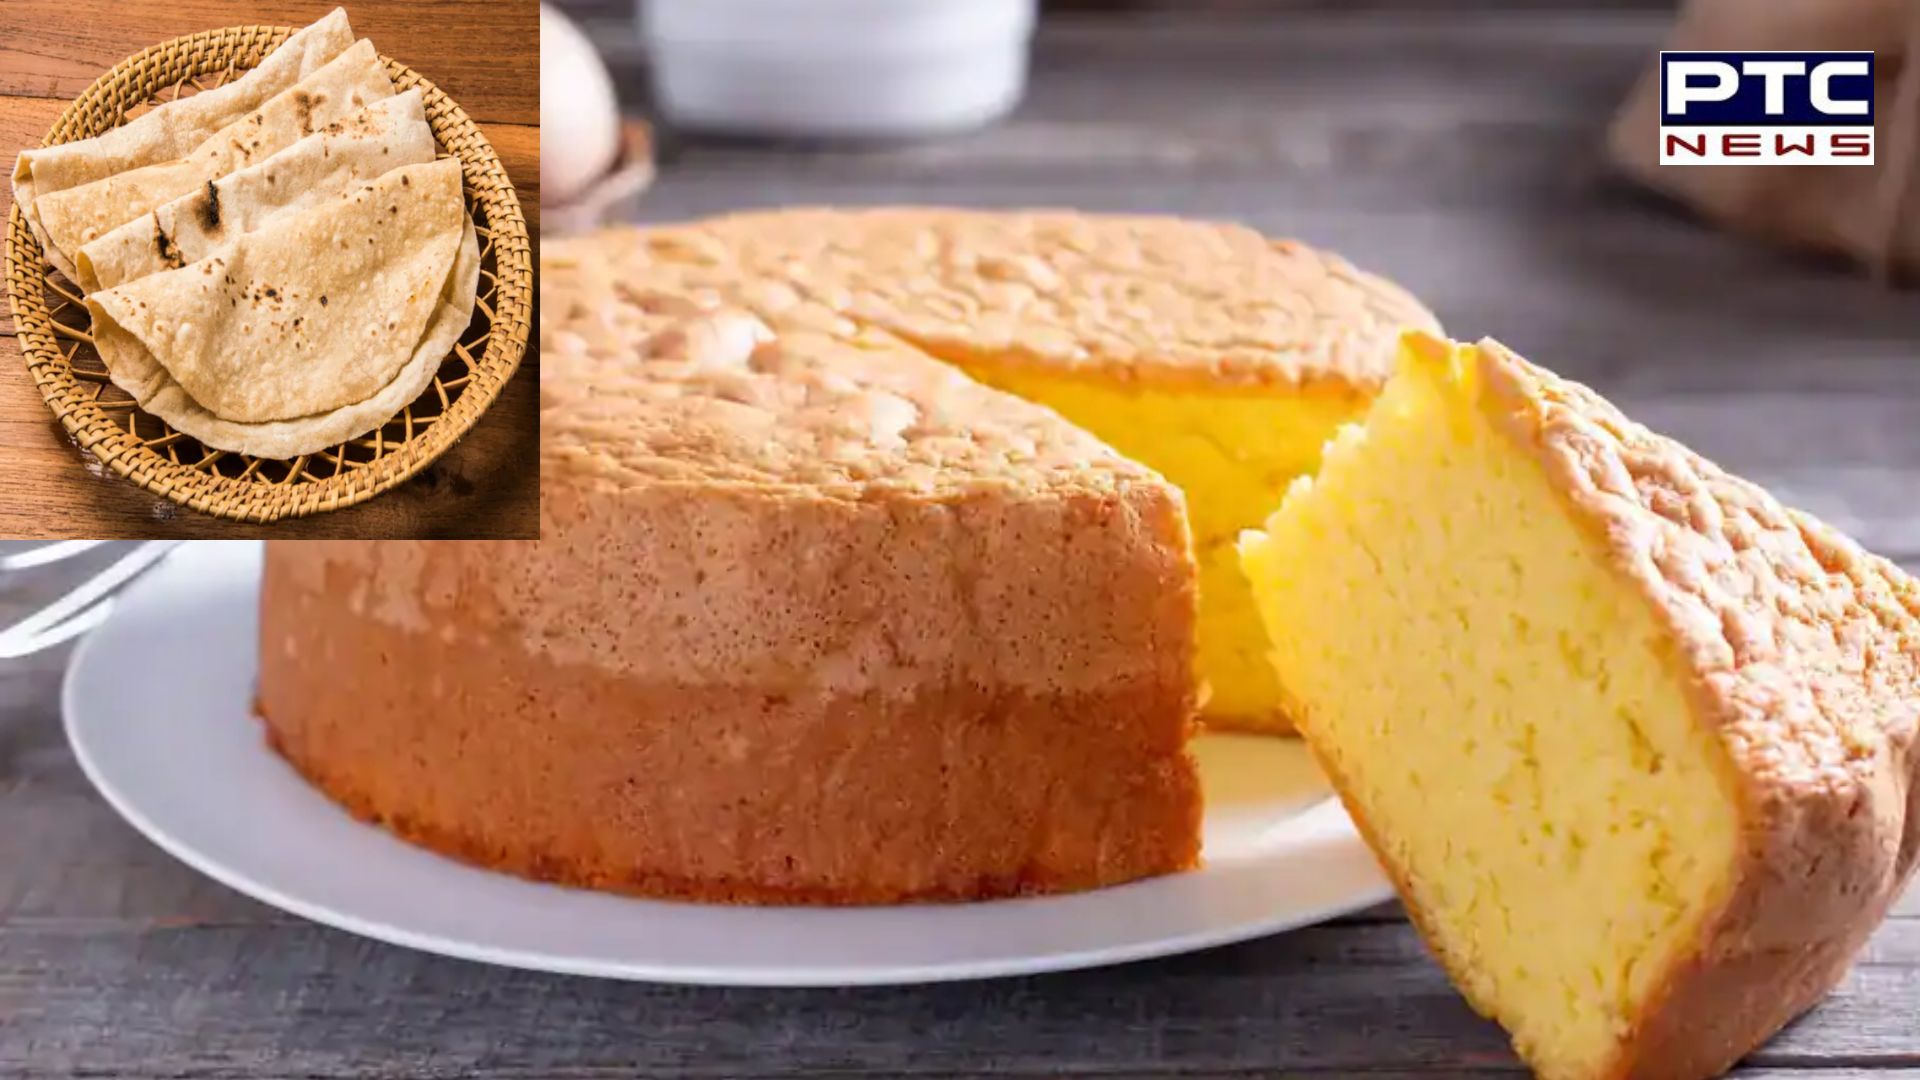 Yummy Cake From Roti: ਰਾਤ ਦੀਆਂ ਰੋਟੀਆਂ ਤੋਂ ਬਣਾਓ ਸਵਾਦਿਸ਼ਟ ਕੇਕ, ਜਾਣੋ ਵਿਧੀ